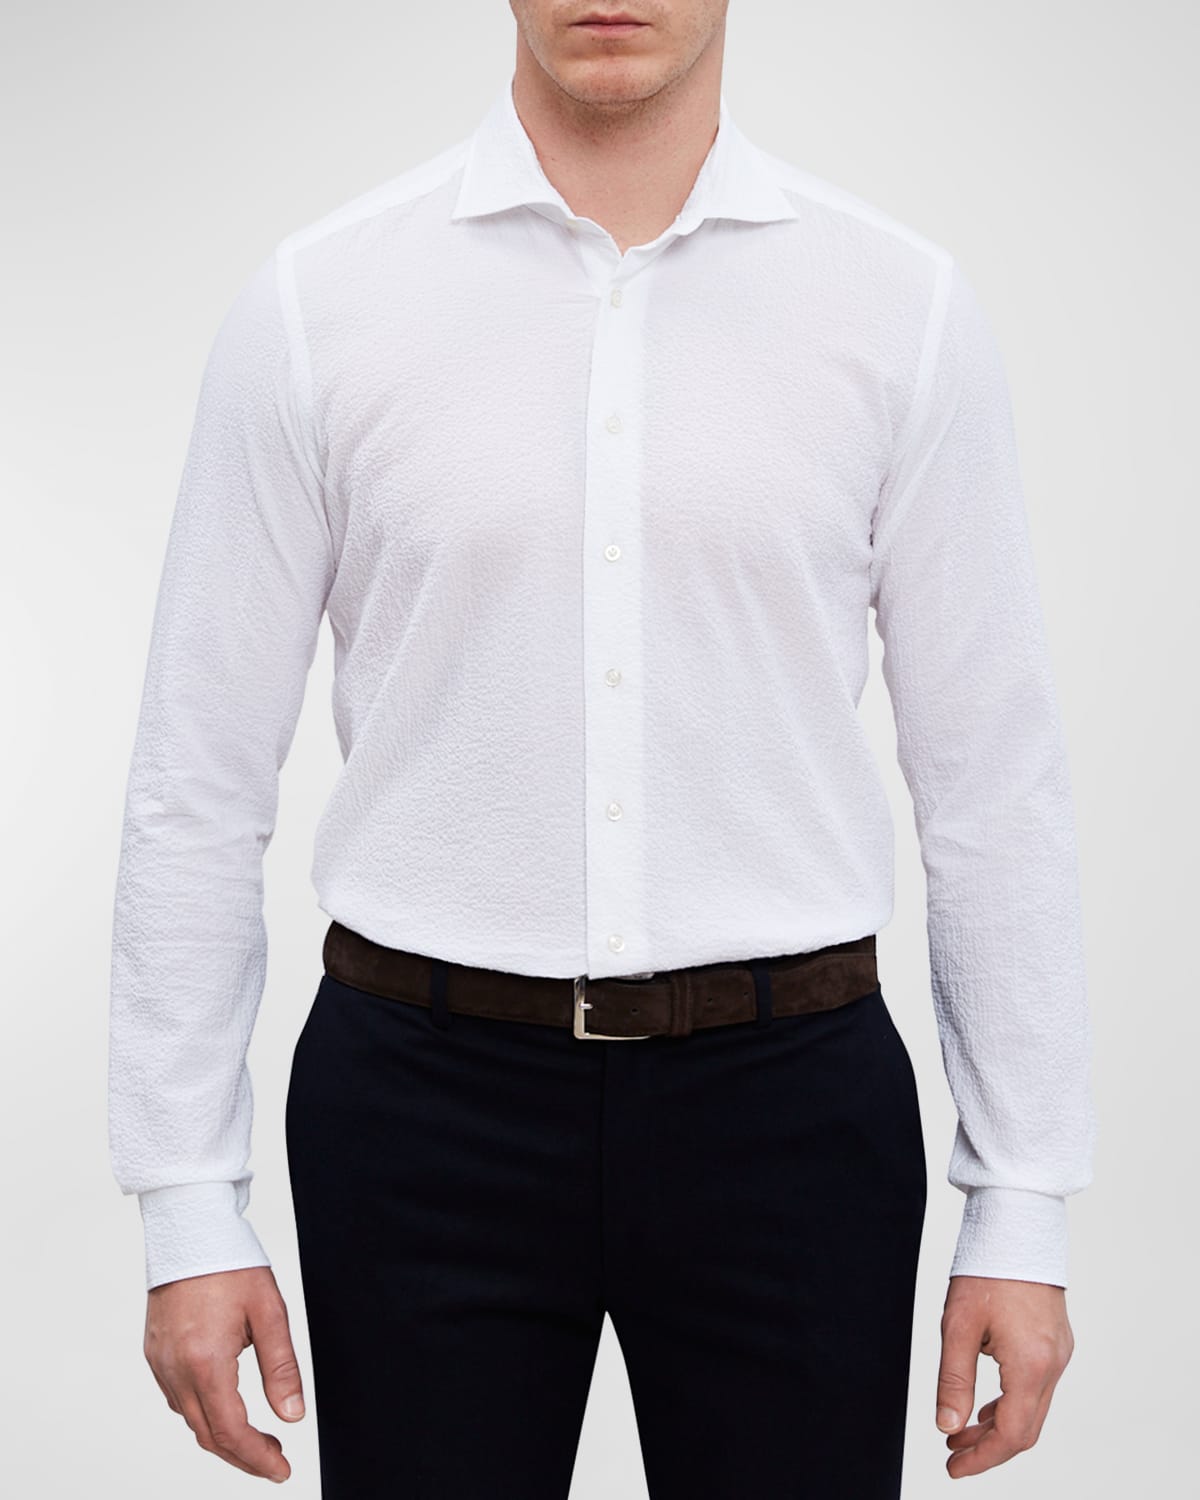 Men's Slim Crinkle Textured Sport Shirt